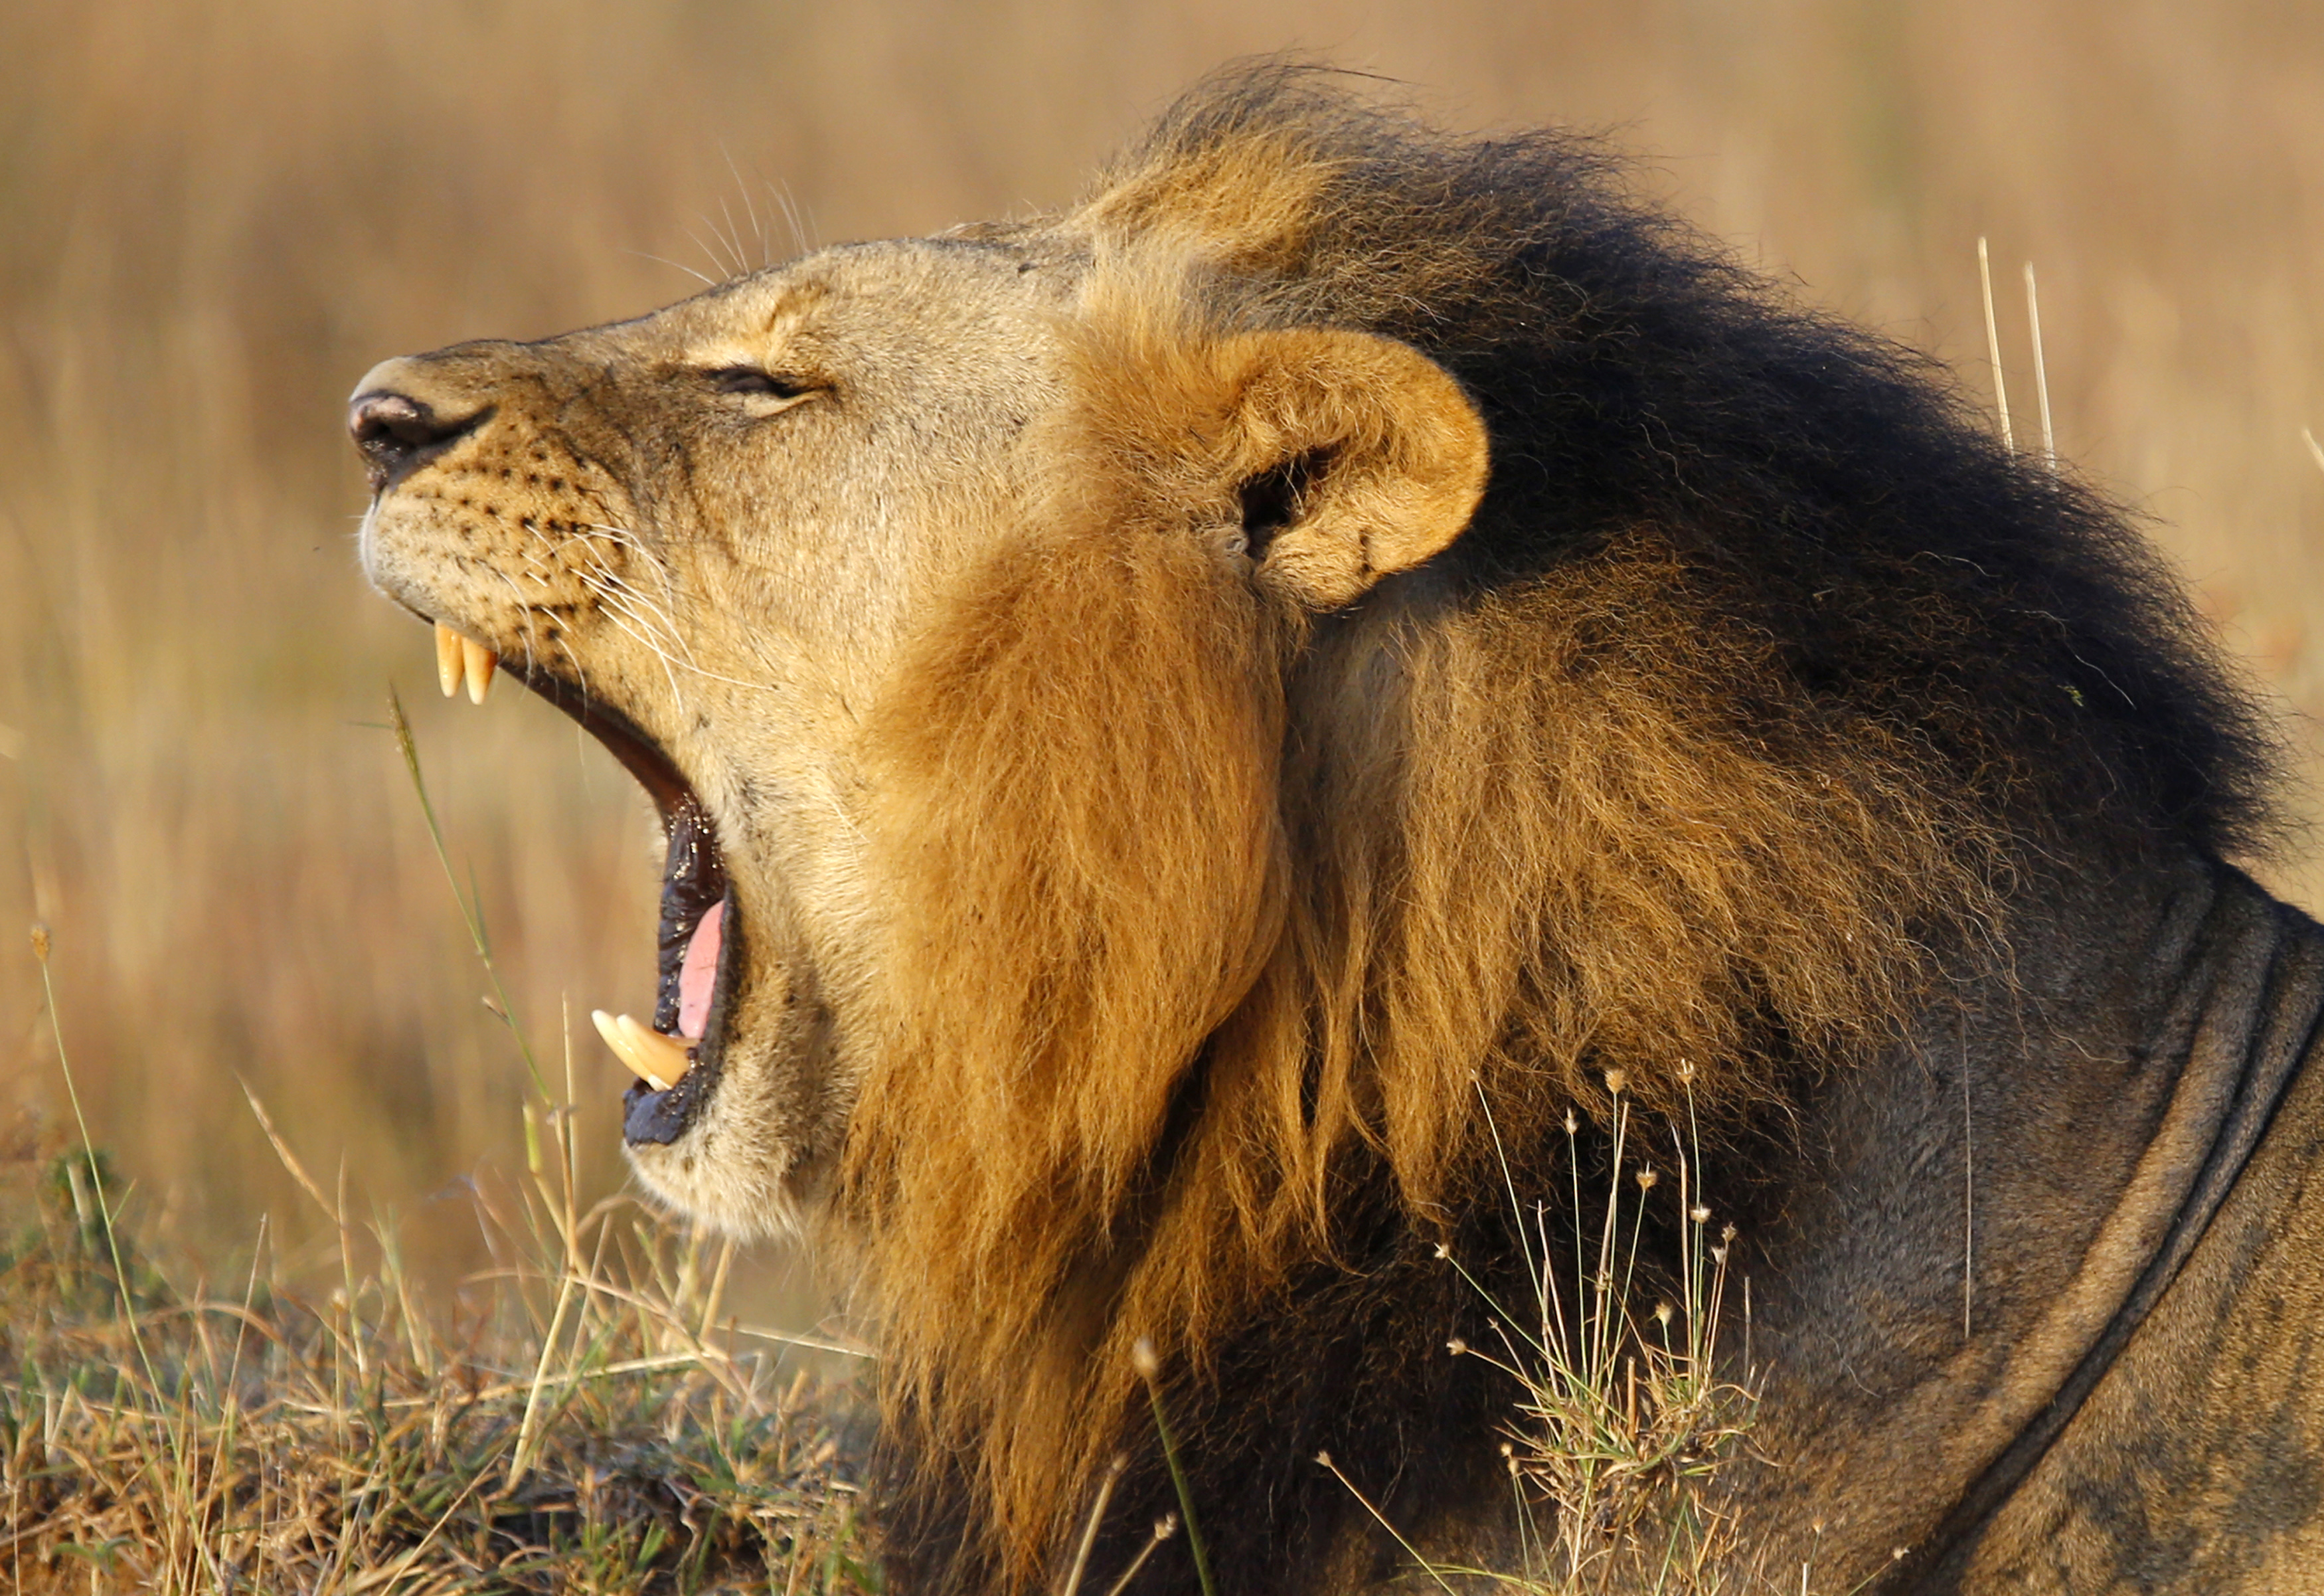 A lions yawns at Nairobi's National Park